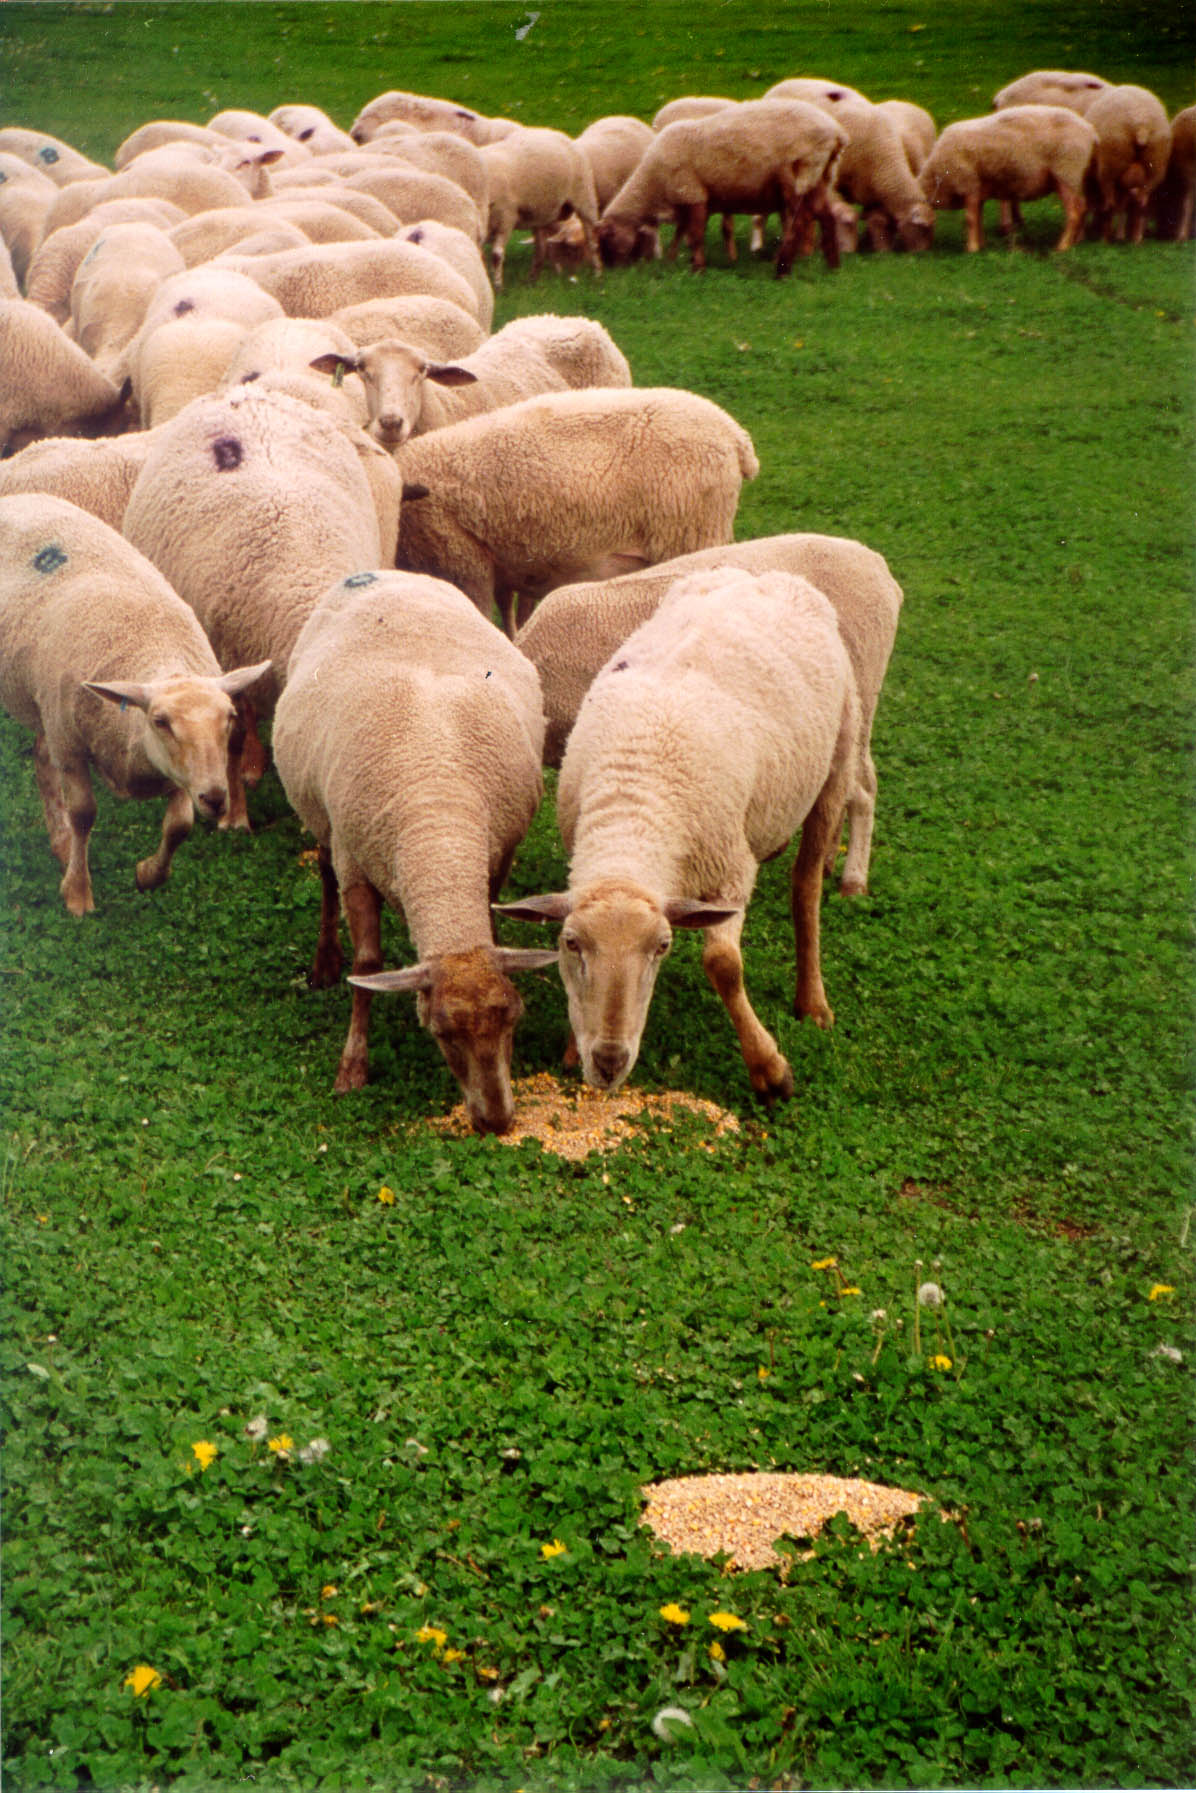 Moutons en train de manger du grain versé en tas sur le sol.